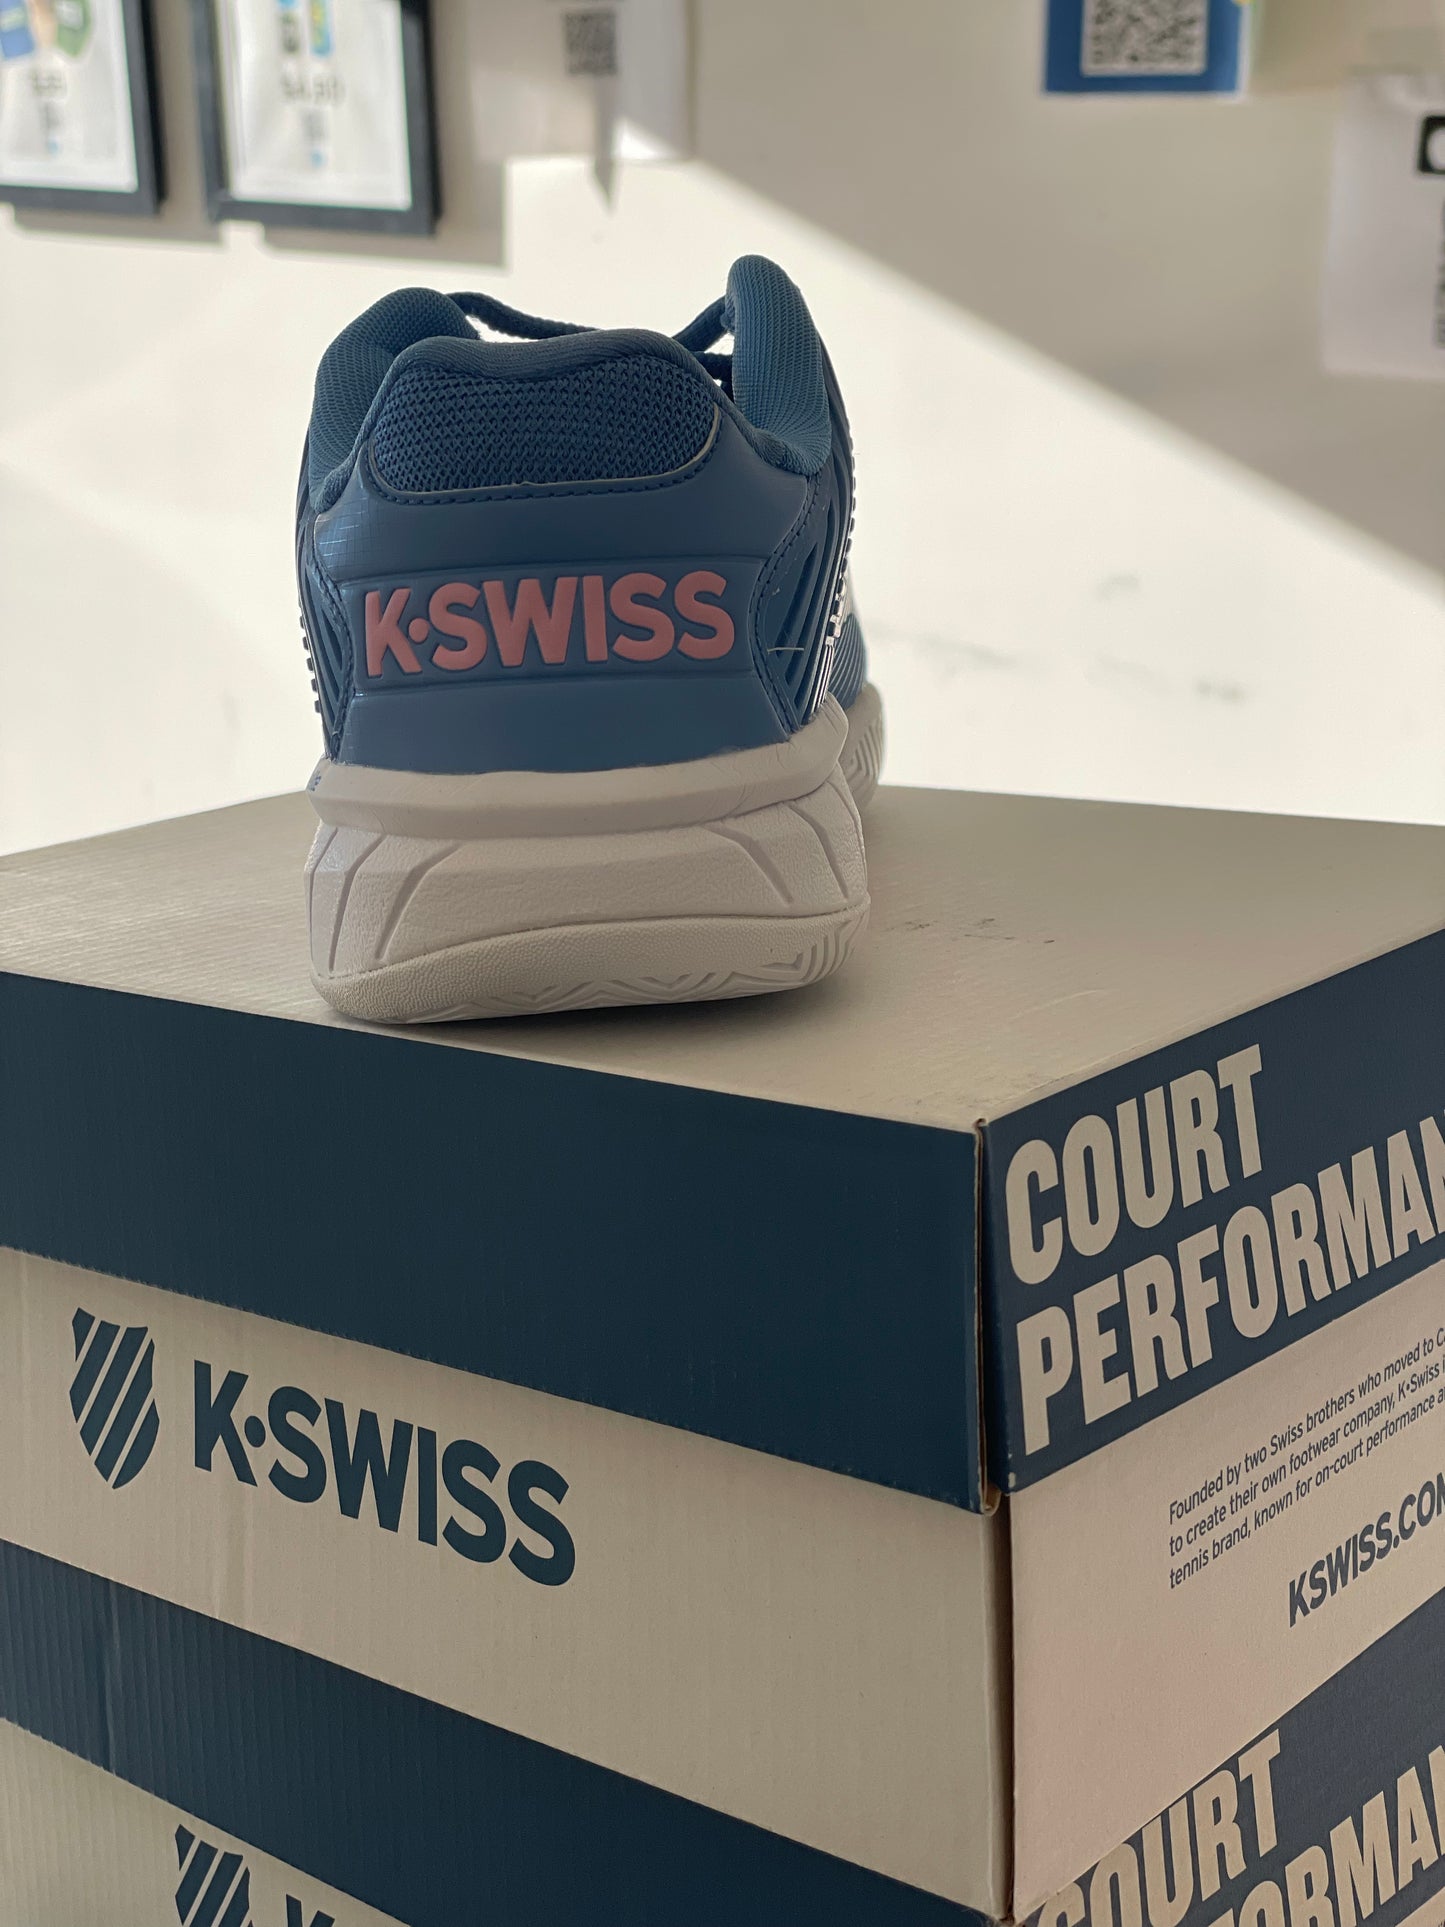 KSwiss Hypercourt Express 2 Women’s Tennis Shoe